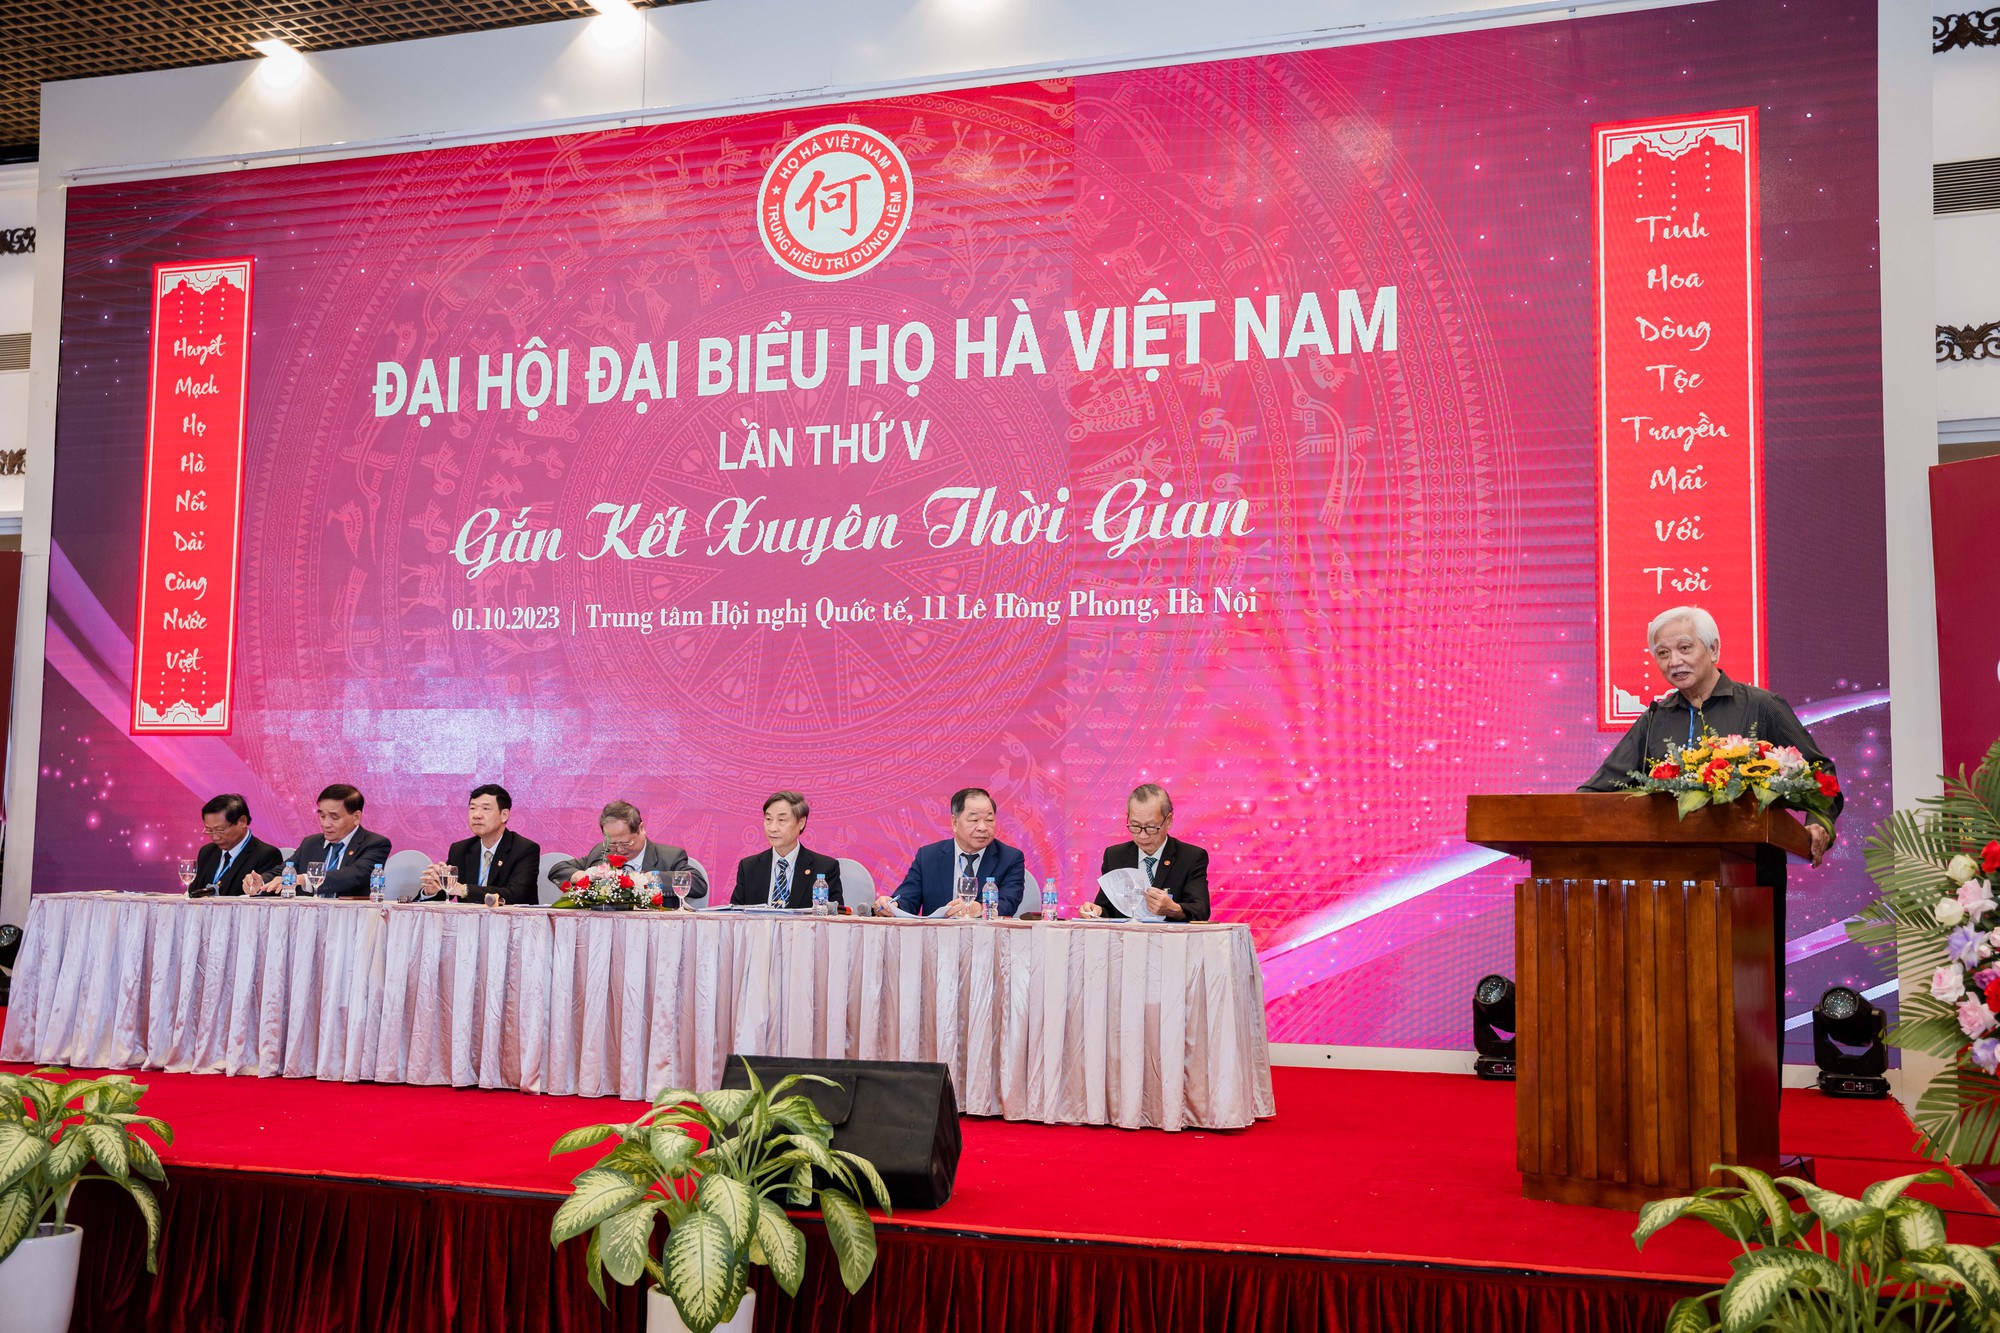 Nguyên Bộ trưởng Hà Quang Dự tái đắc cử Chủ tịch Hội đồng họ Hà Việt Nam - Ảnh 4.